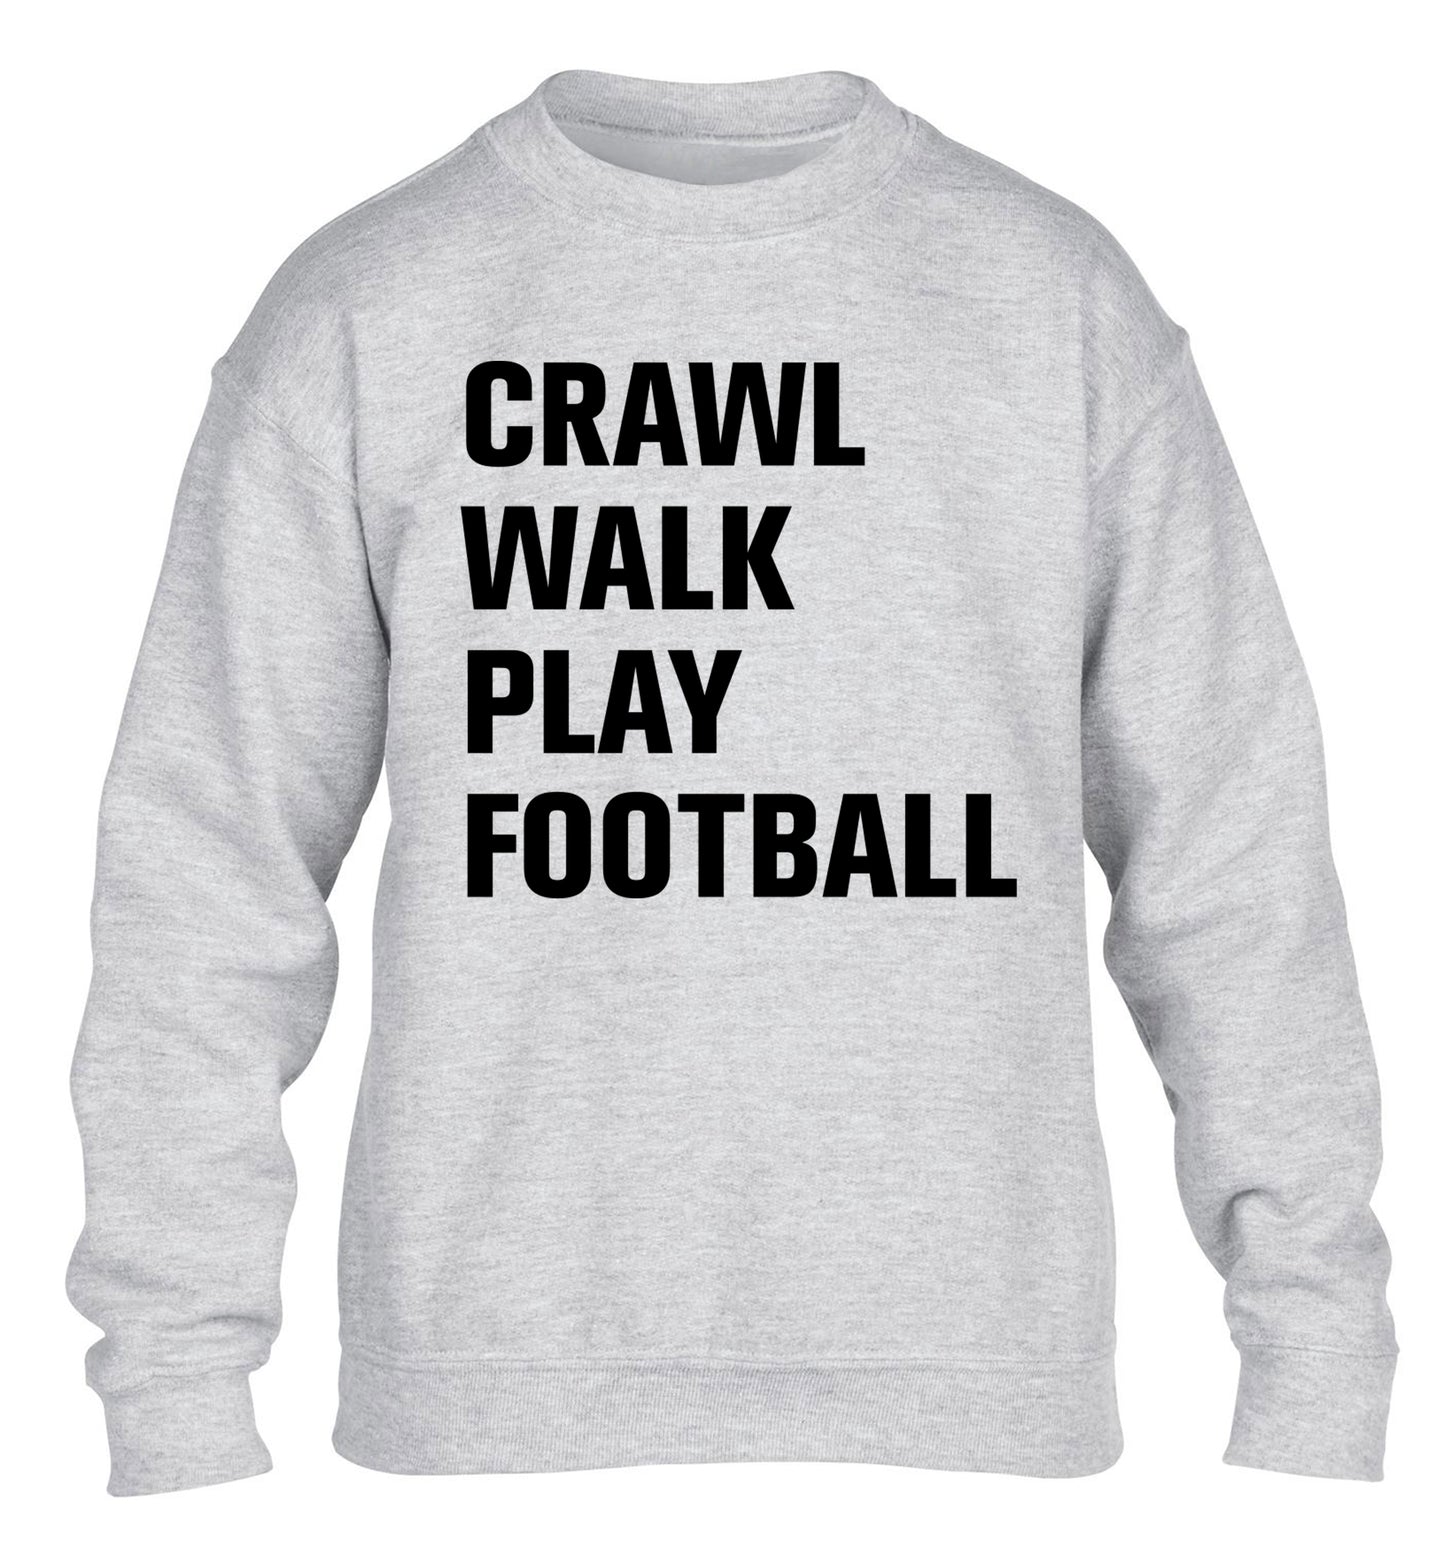 Crawl, walk, play football children's grey sweater 12-13 Years